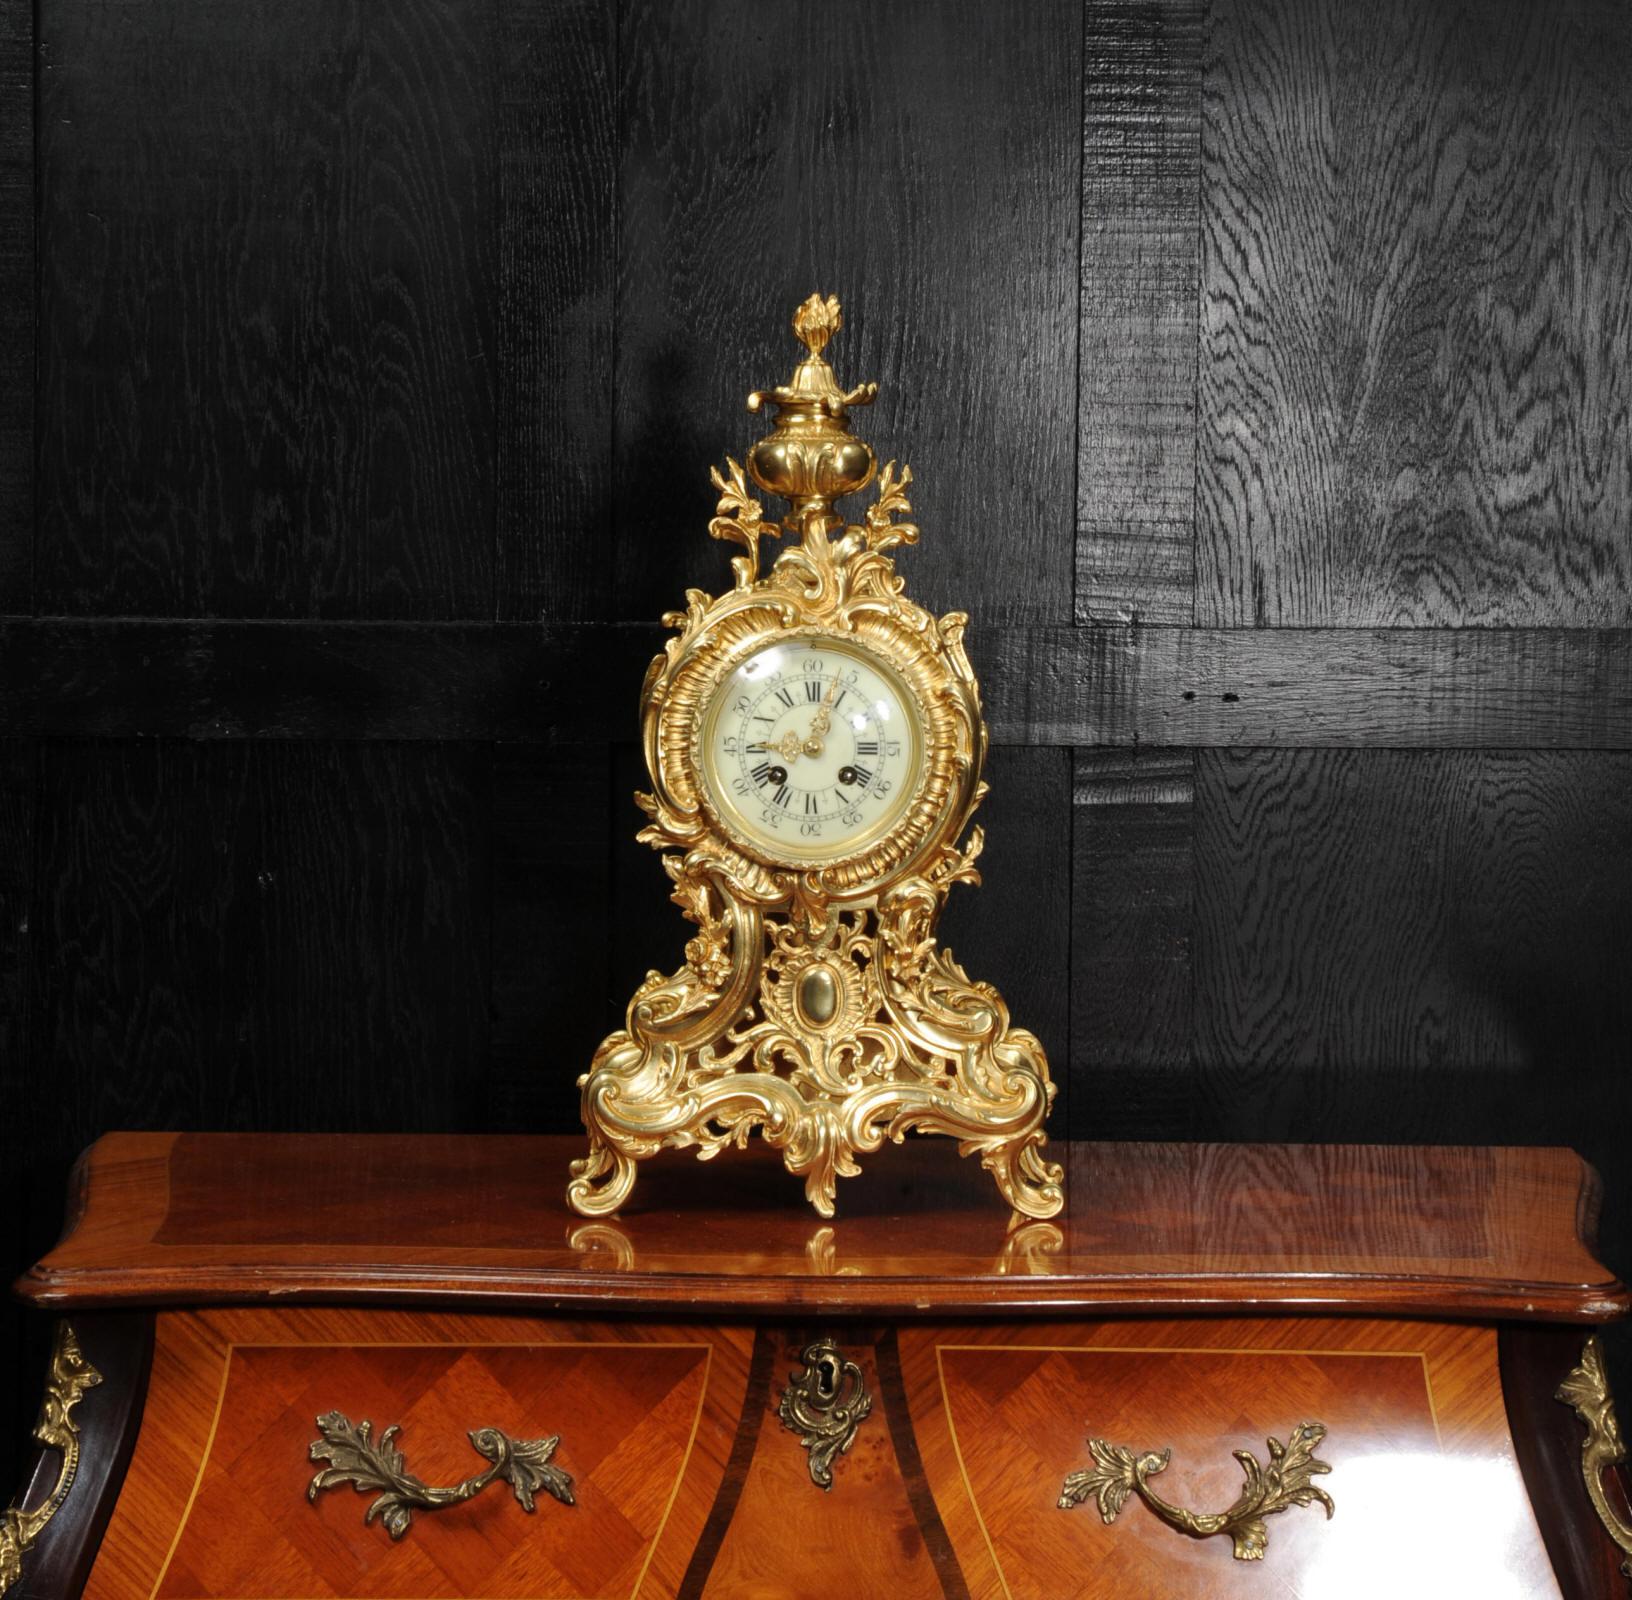 Une grande, superbe et très décorative horloge française ancienne d'origine datant d'environ 1900. Il est audacieusement modelé dans le style rococo en bronze finement doré. Boîtier de forme cintrée, abondamment décoré de feuilles d'acanthe et de